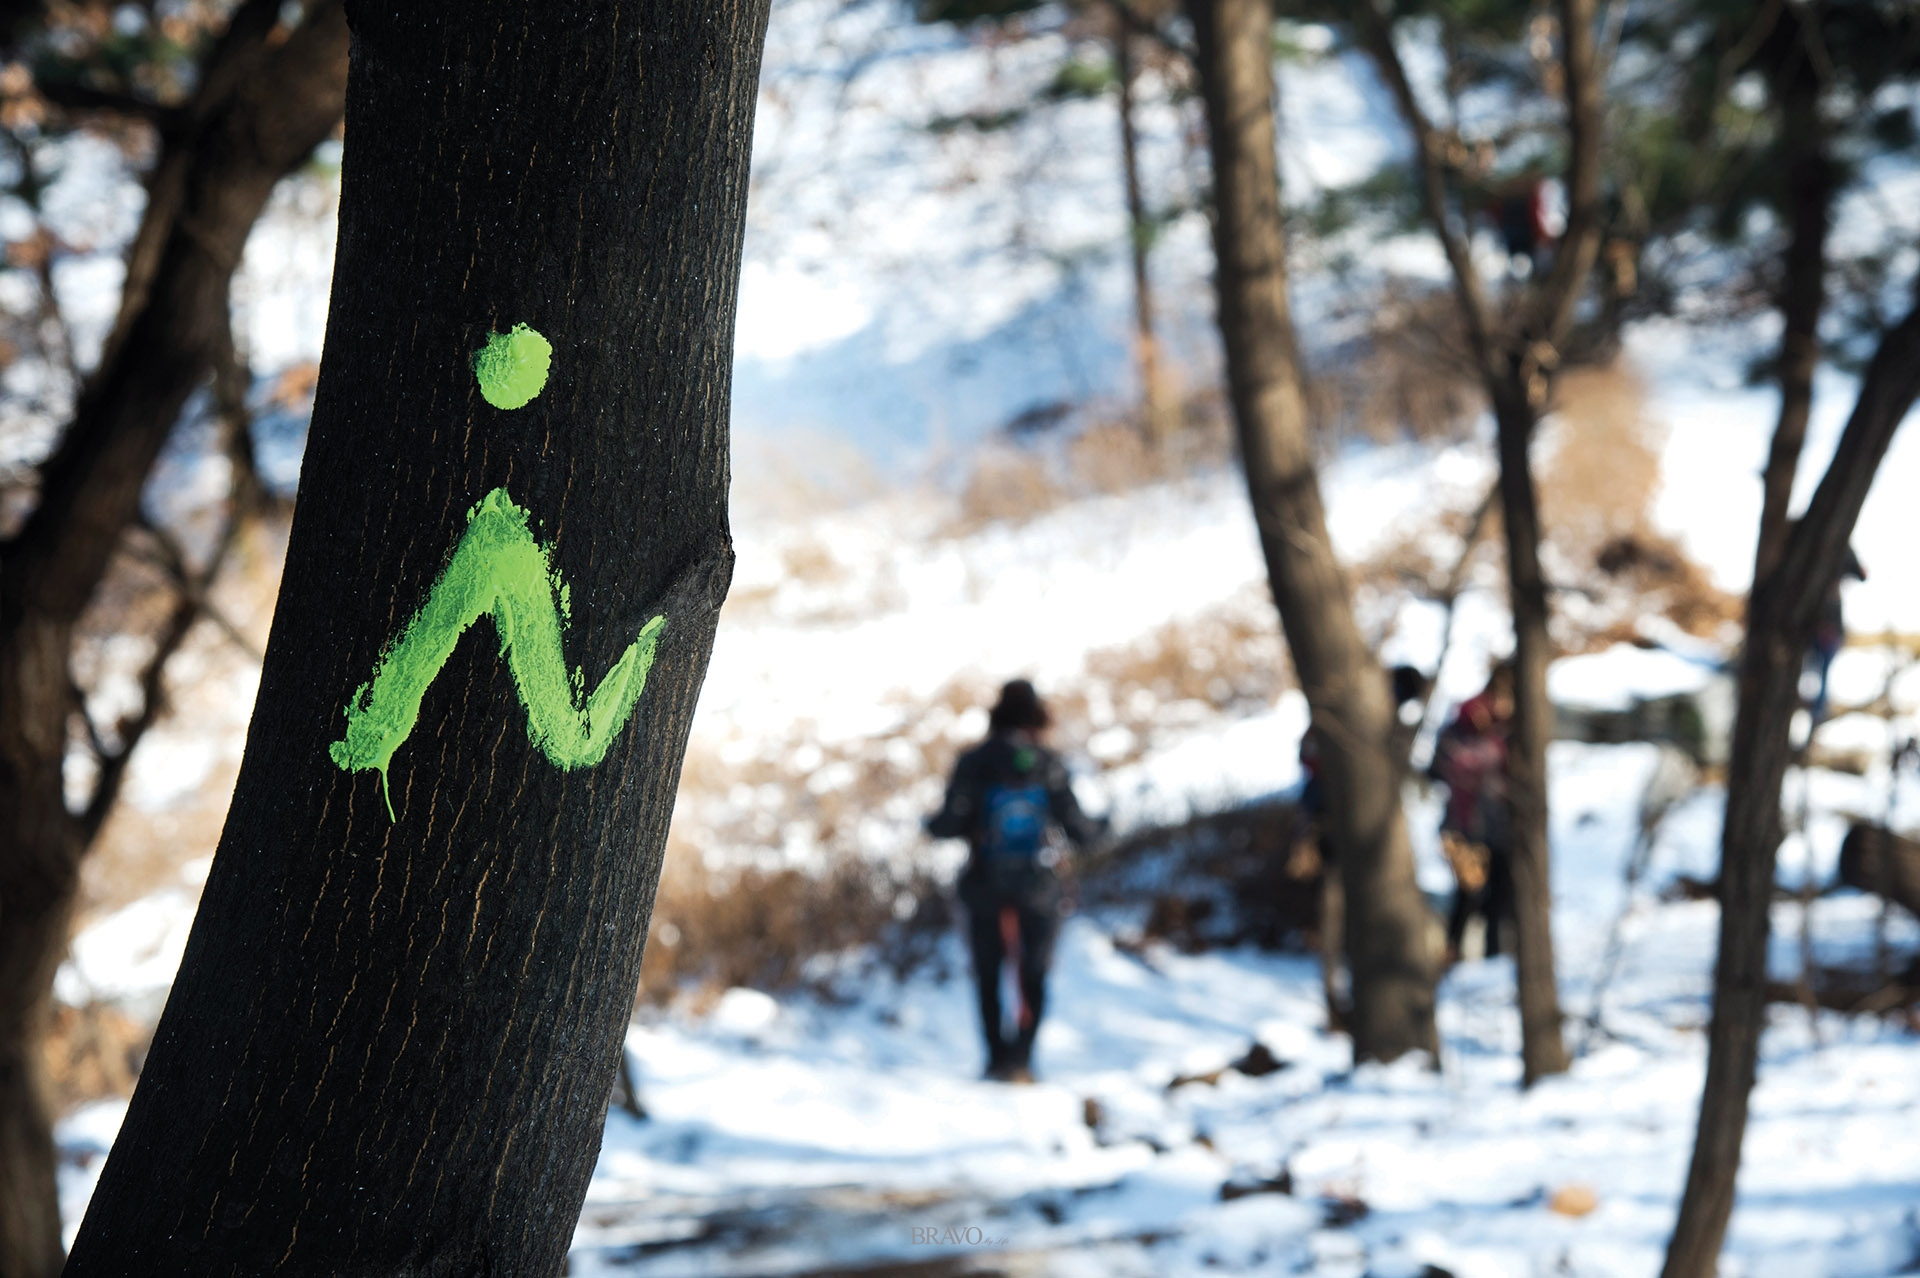 ▲지난 3월 1일, 아름다운 도보여행 회원들은 삼남길 서울구간 우면산 코스에 길 표시 작업을 했다.